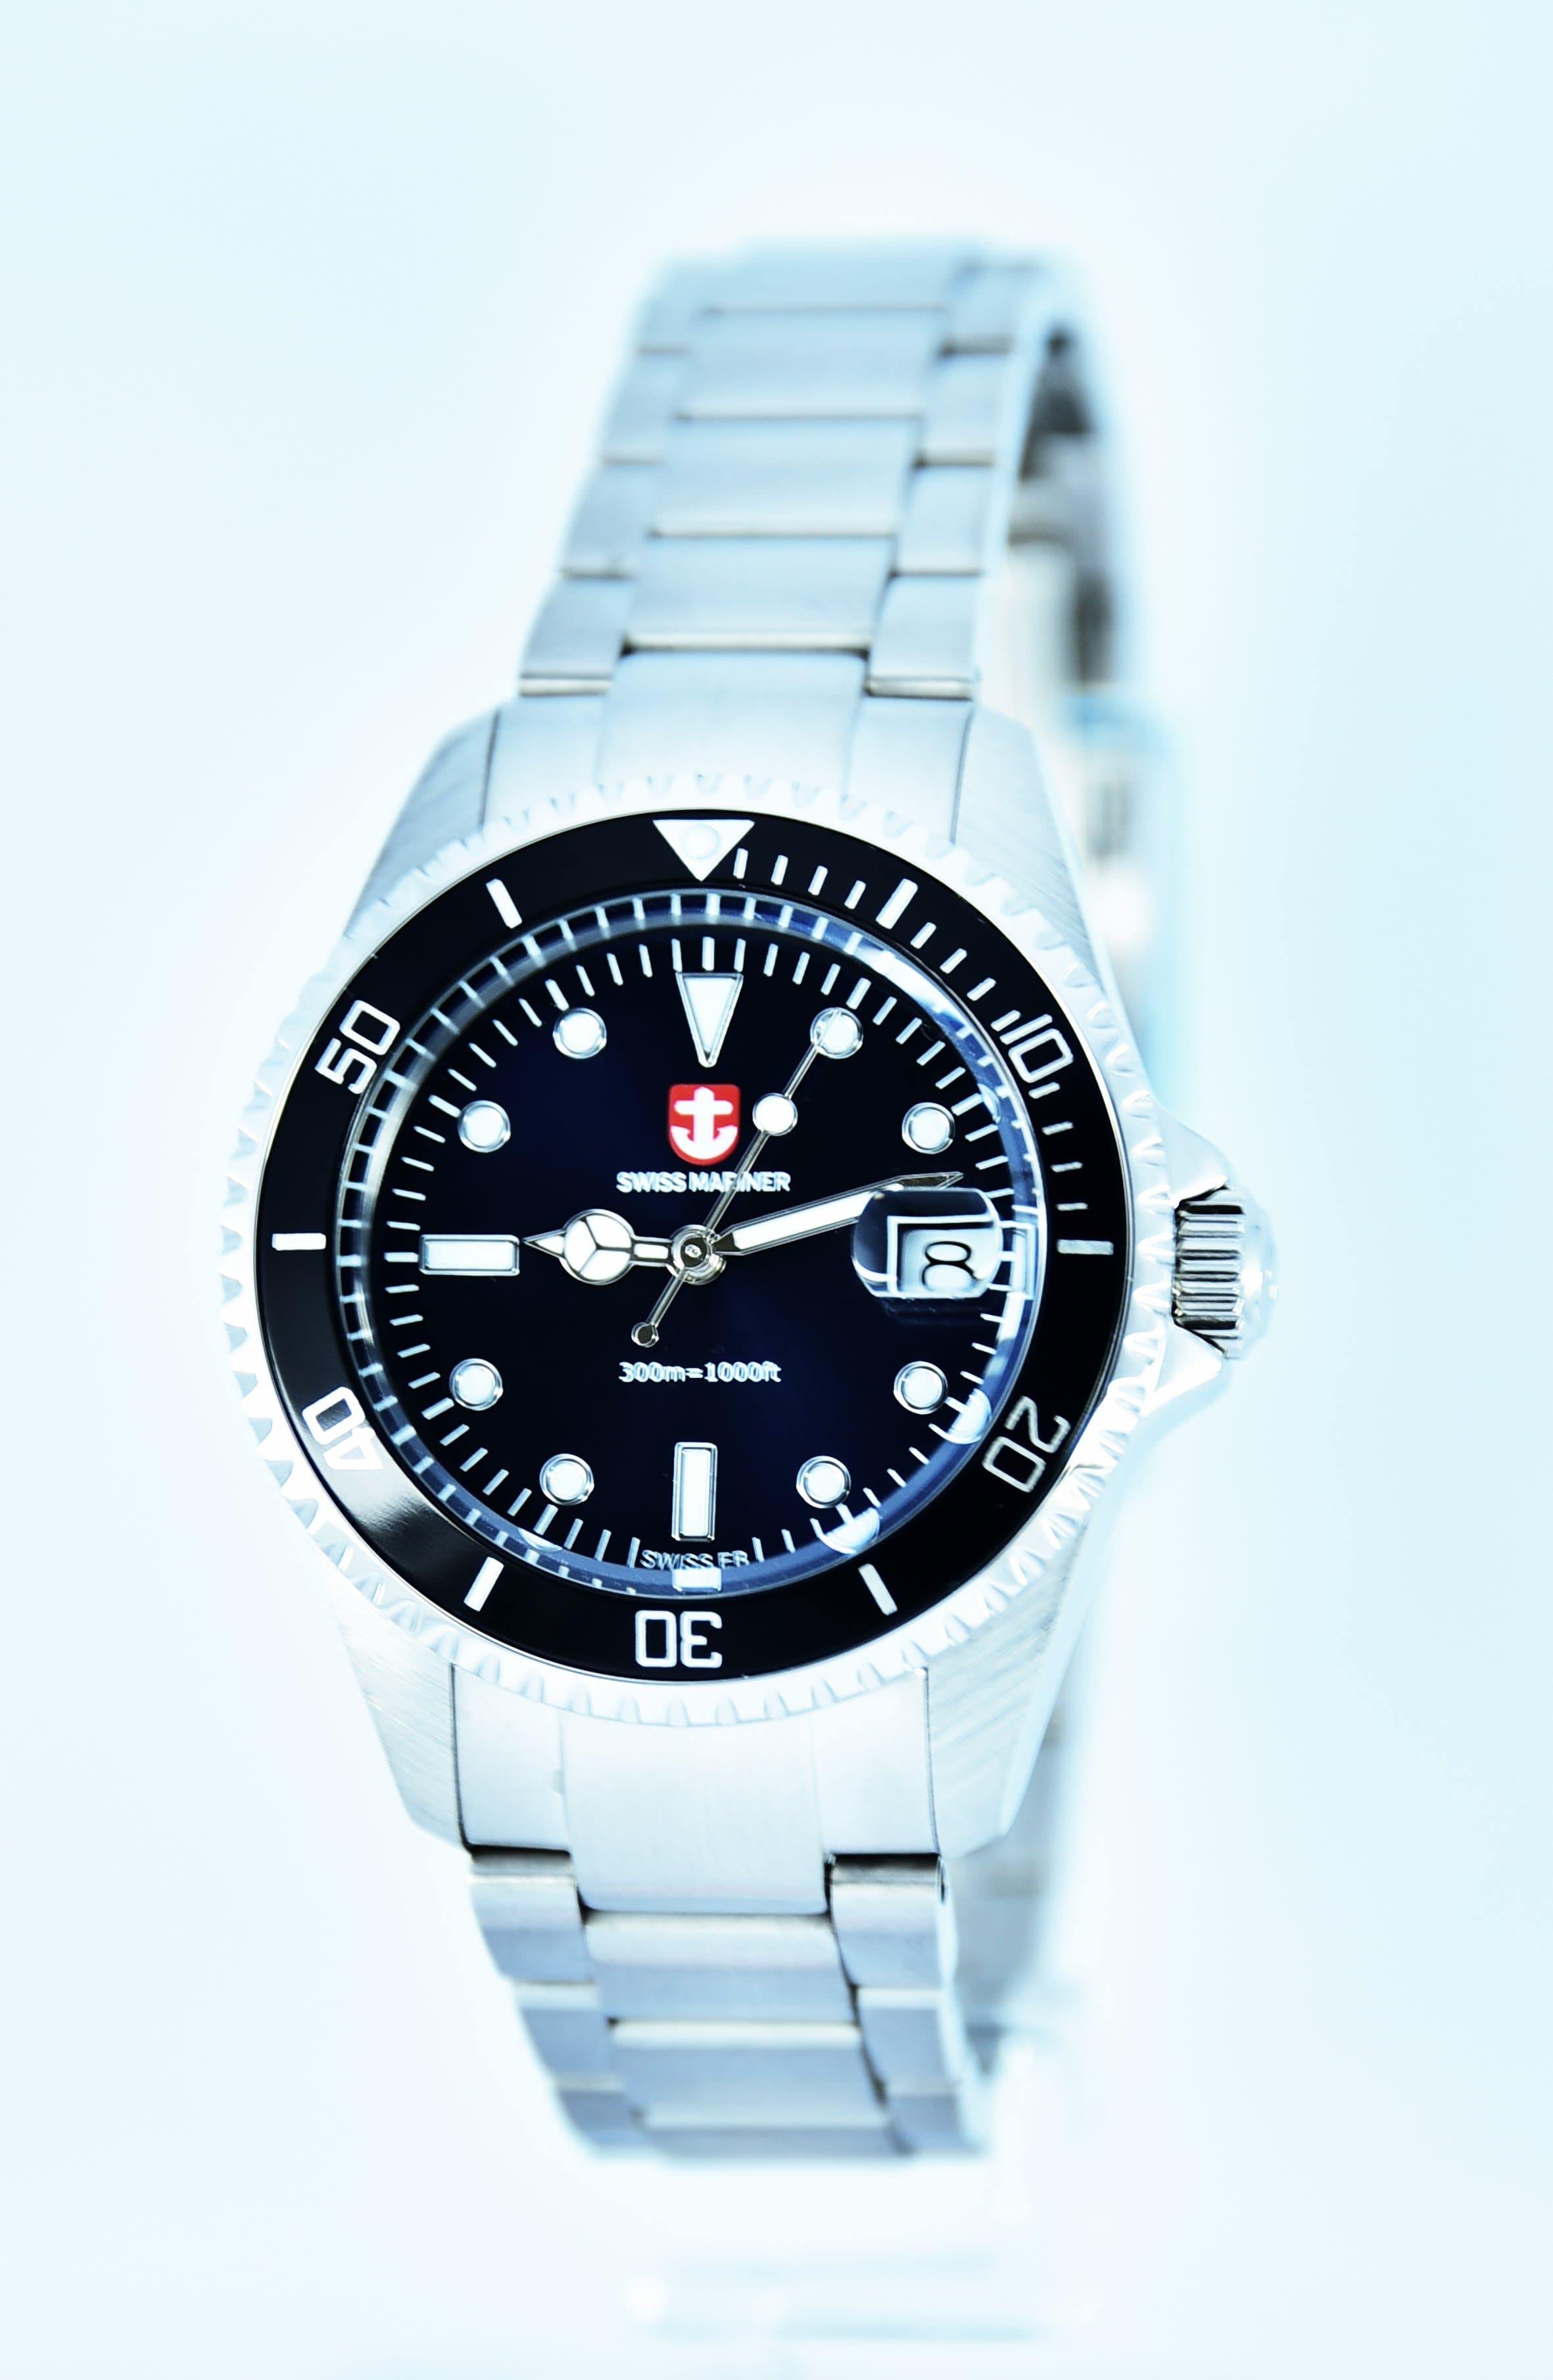 Swiss Mariner Marine Series Ladies' Watch SL6086R09B-SSBKBU - Prestige